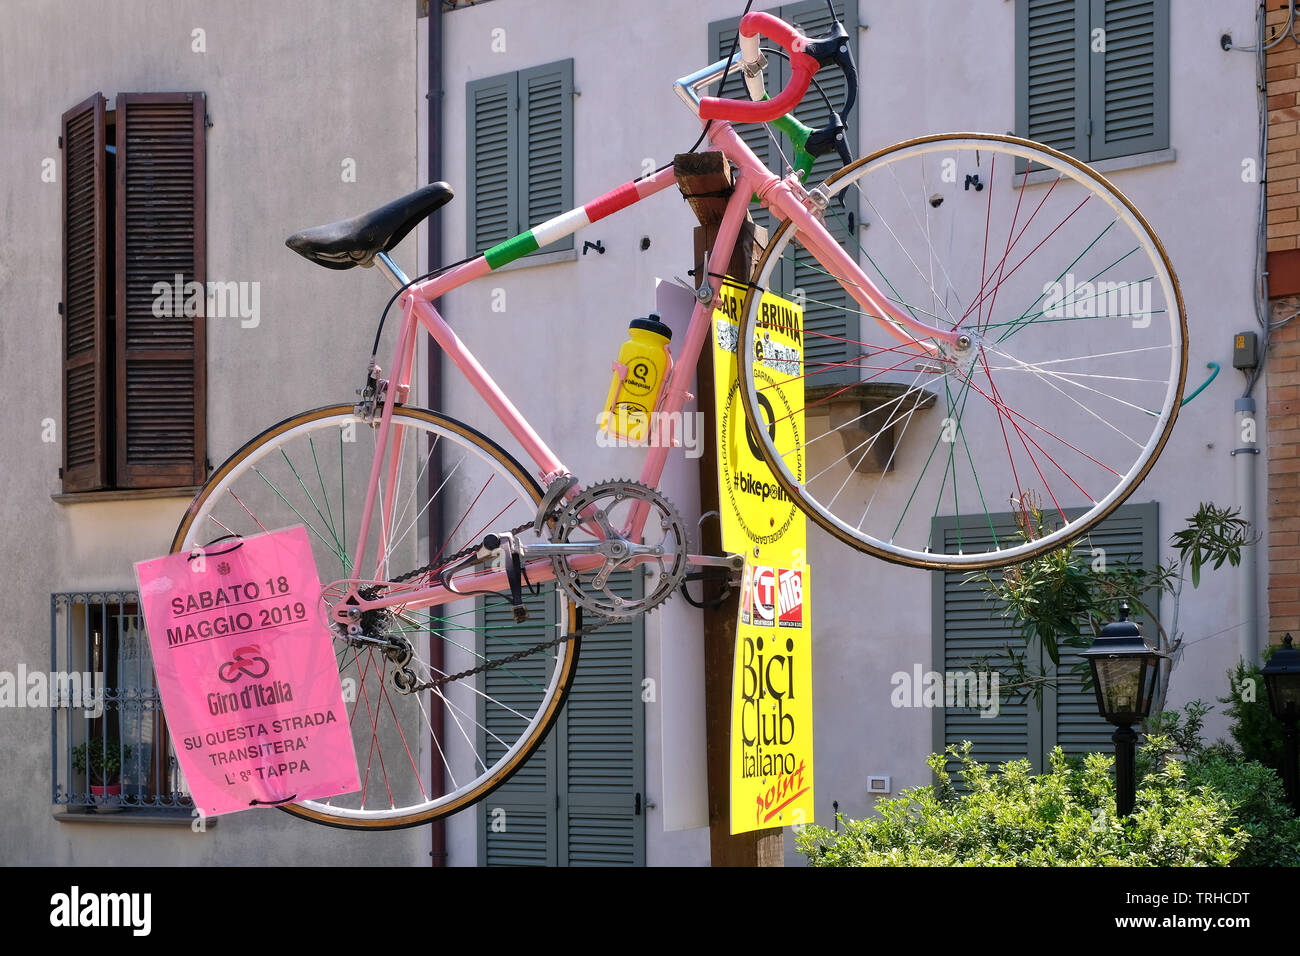 Vecchia bici da corsa nella città di Fiorenzuola di Focara, Panoramica Adriatica nella provincia delle Marche in onore della tappa del Giro d'Italia, Italia Foto Stock